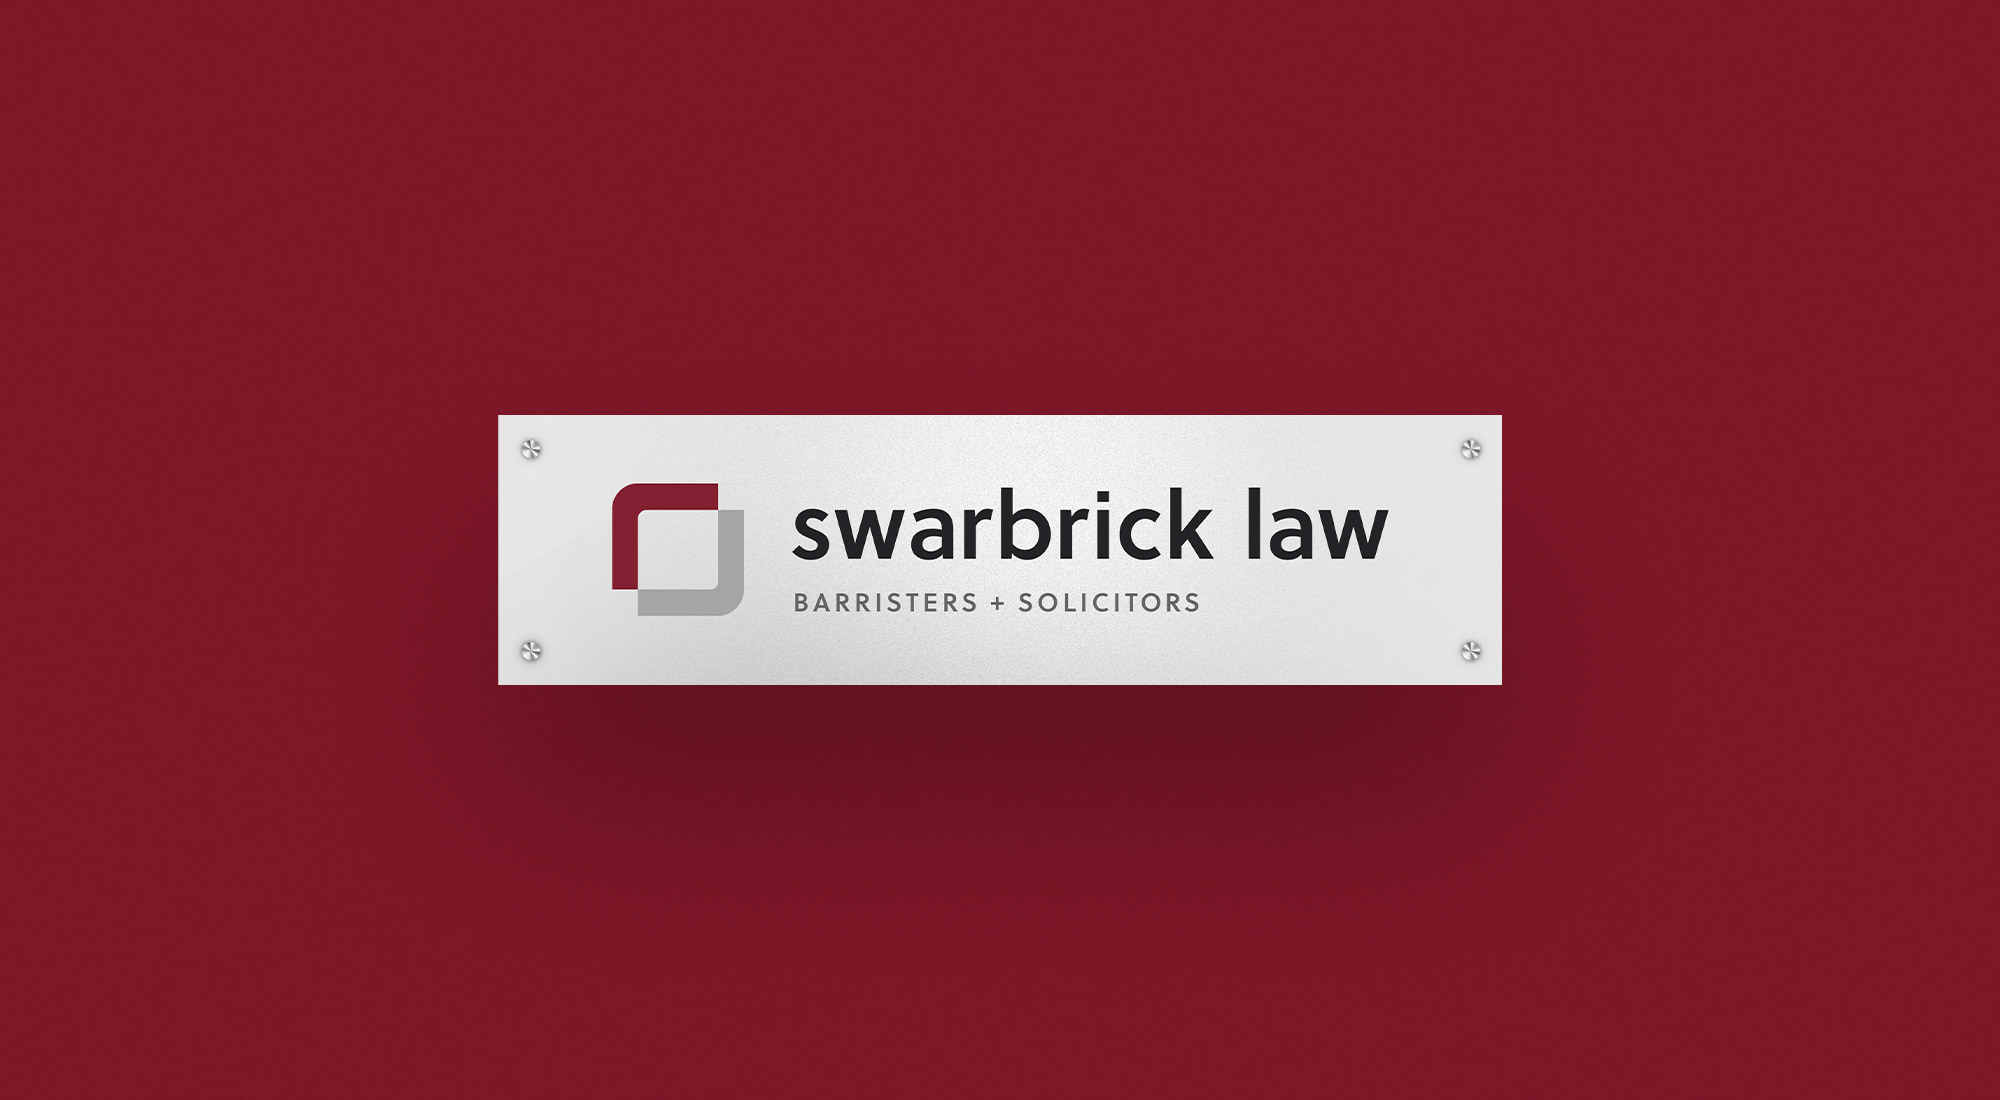 Swarbrick Law Stationery